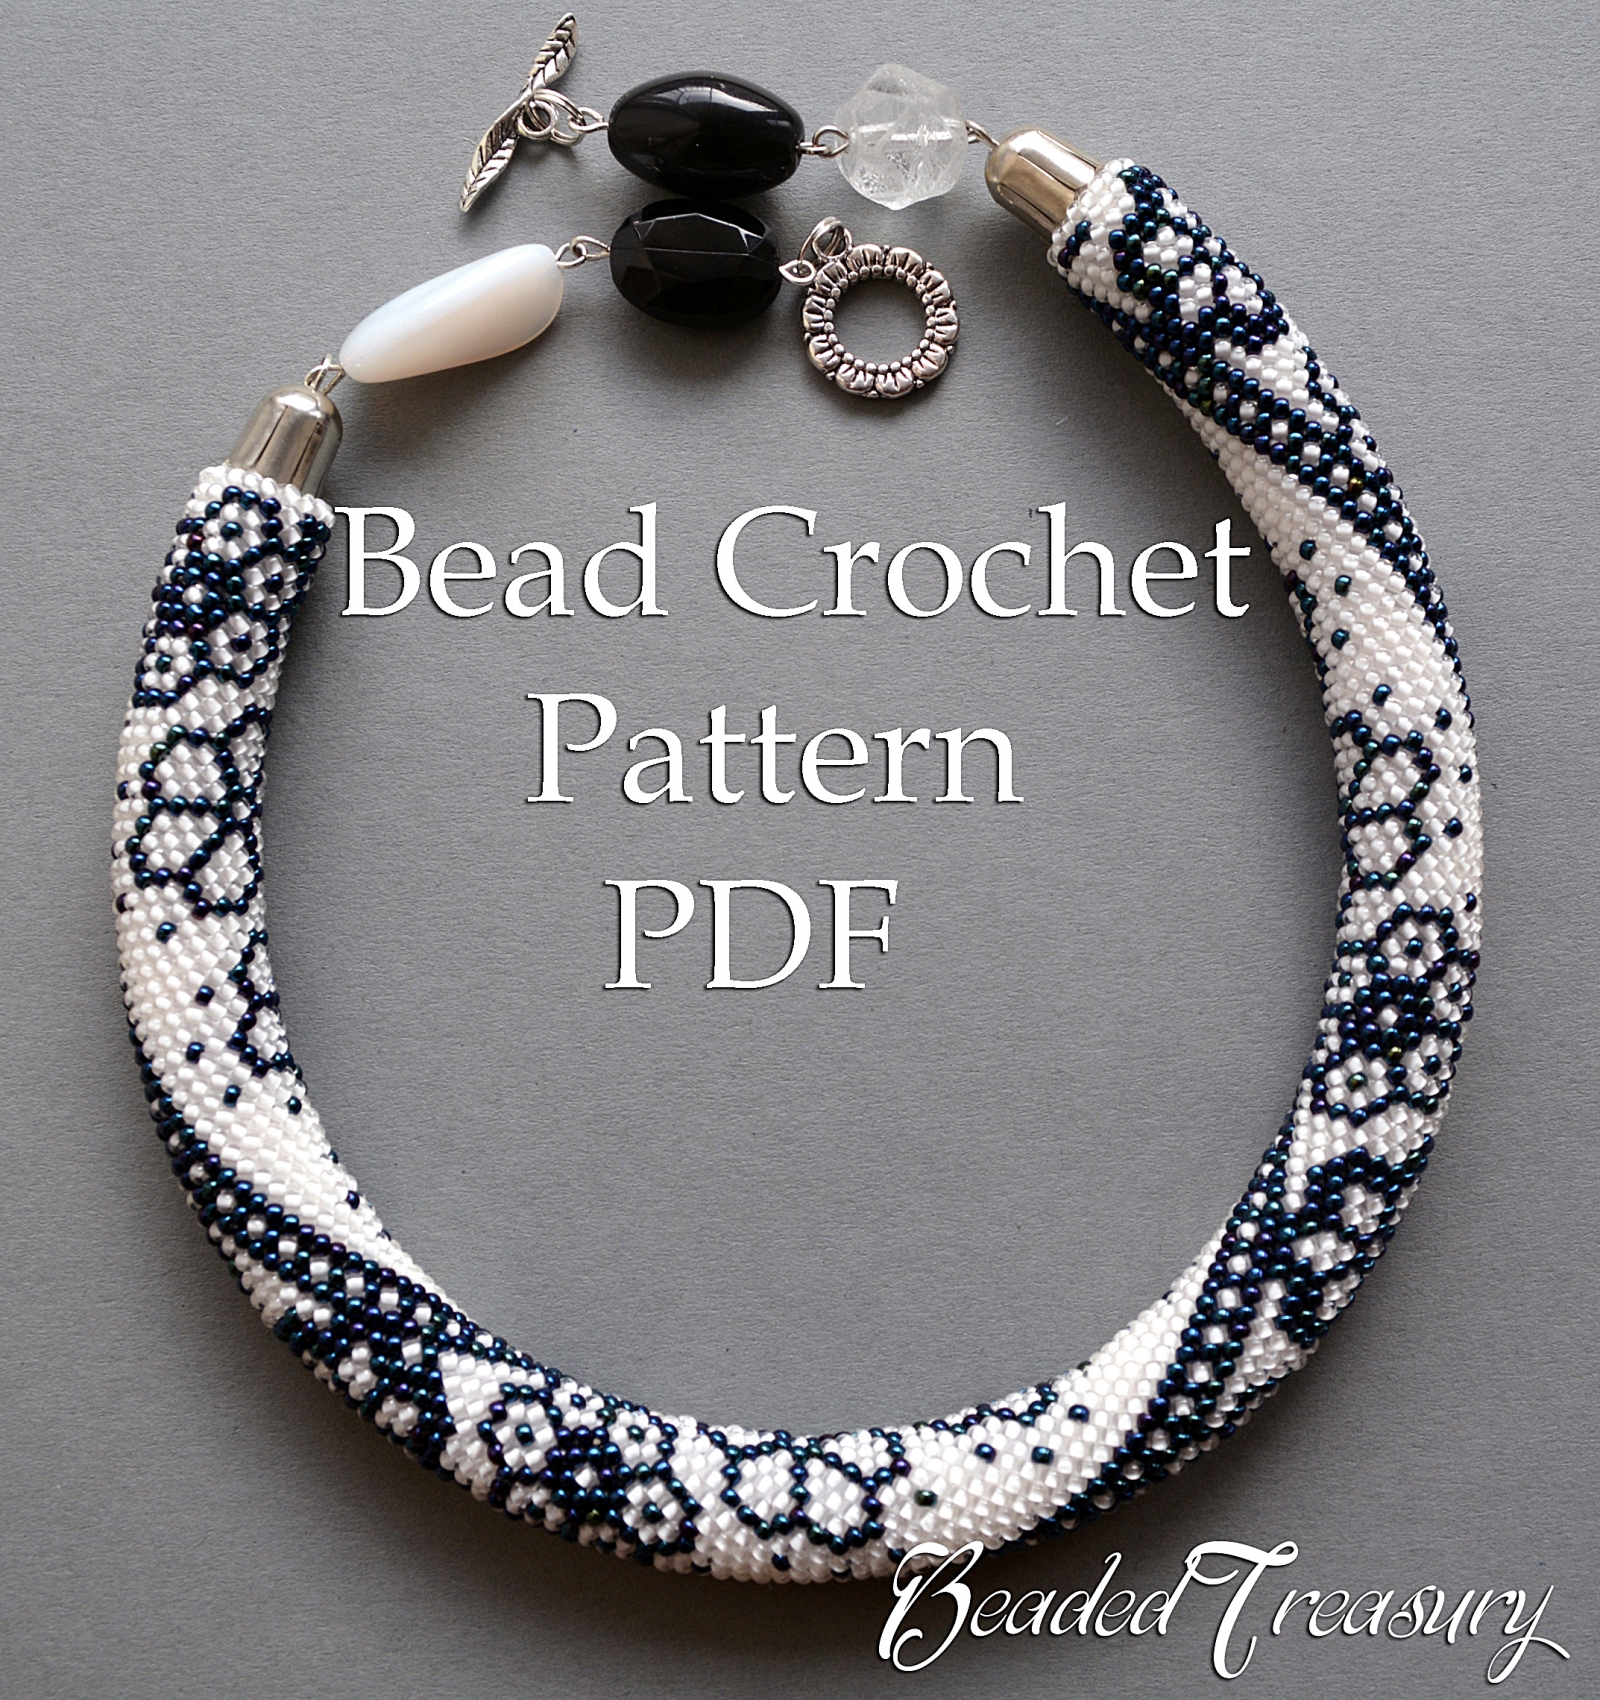 WINTER LACE - bead crochet necklace pattern / Bead crochet rope pattern